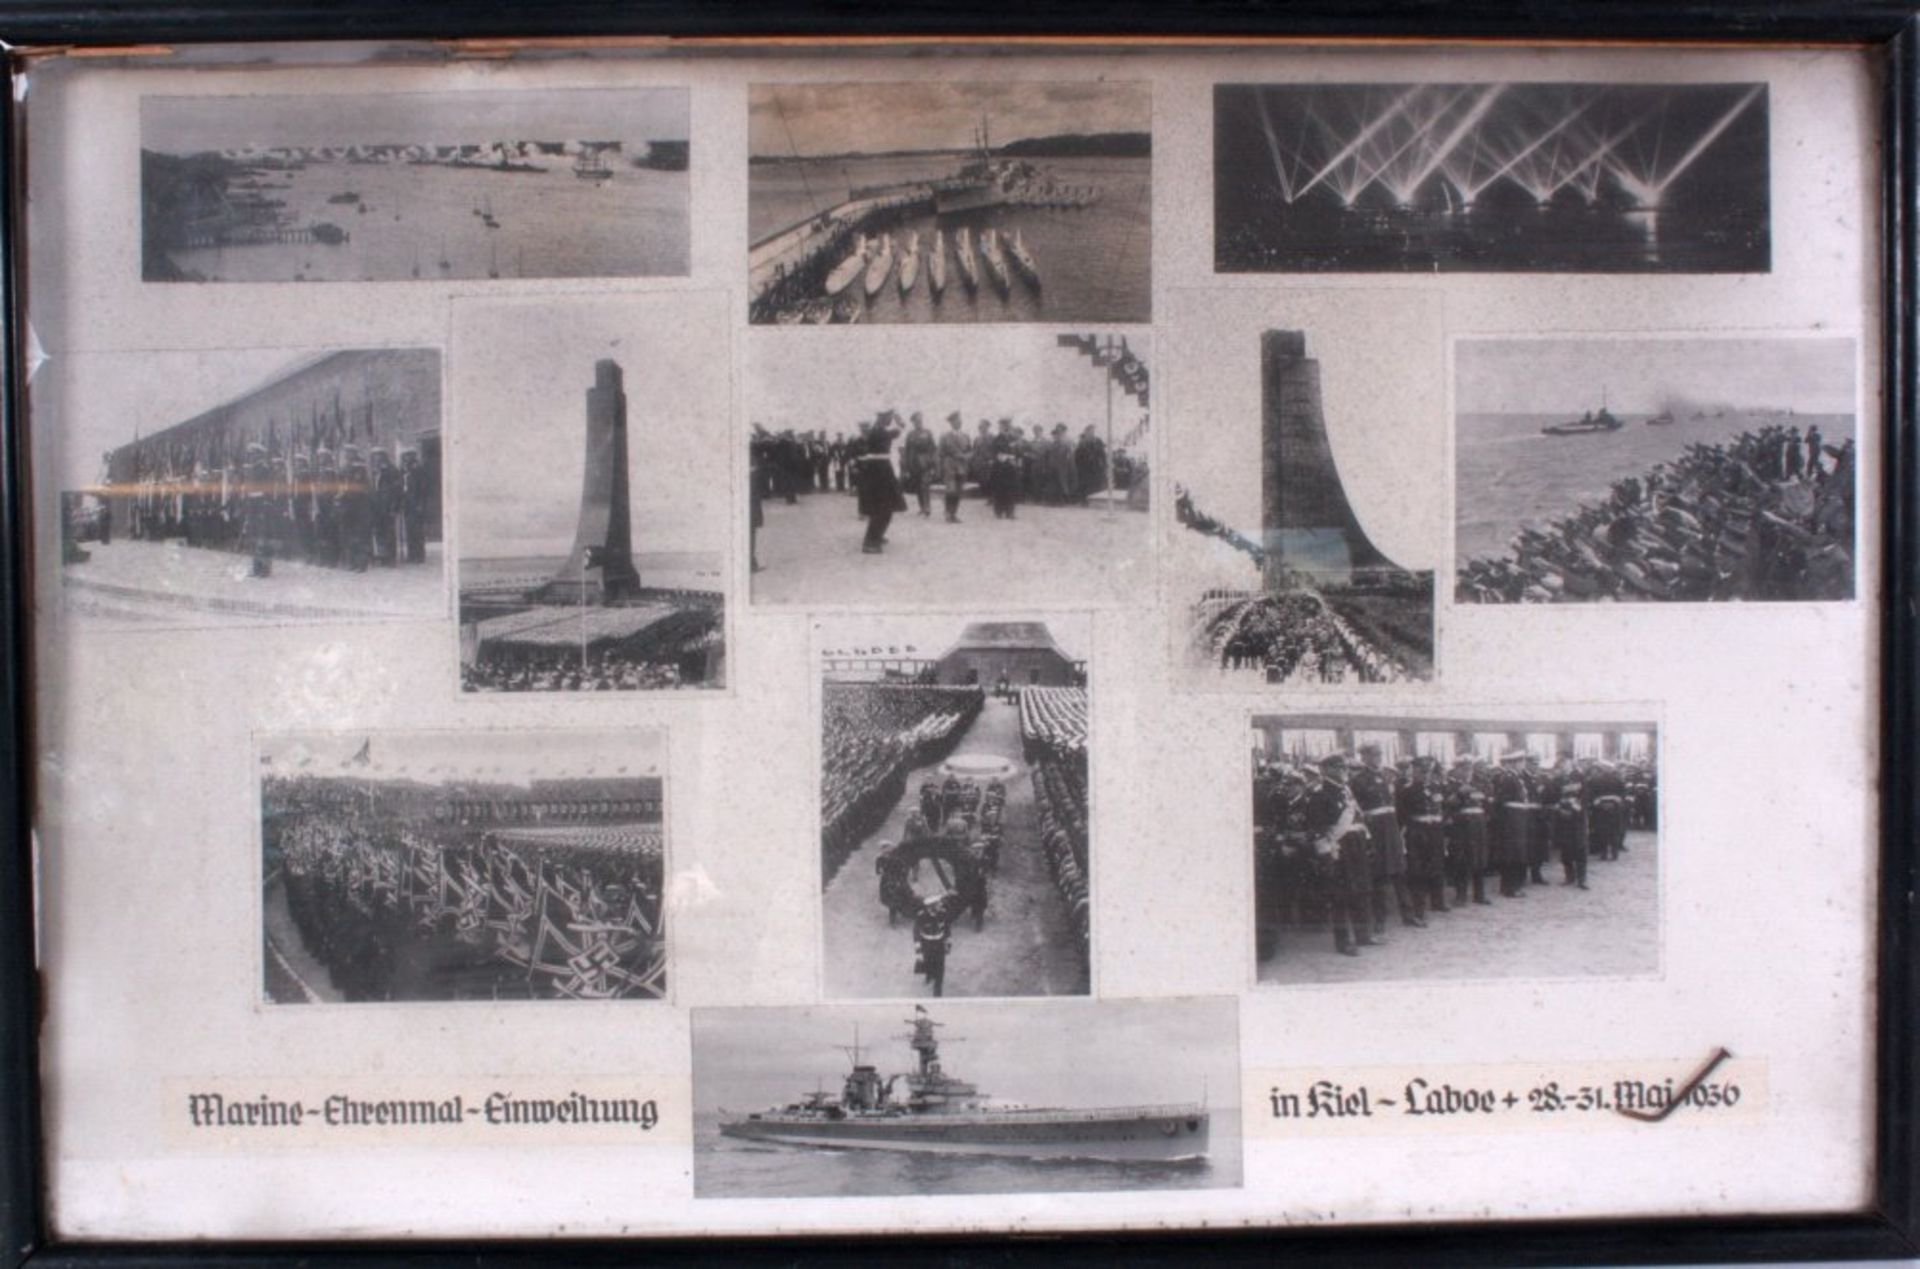 Marine Ehrenmal-Einweihung in Kiel im Mai 1936Fotos hinter Glas gerahmt, ca. 50x77 cm

Dieses Los